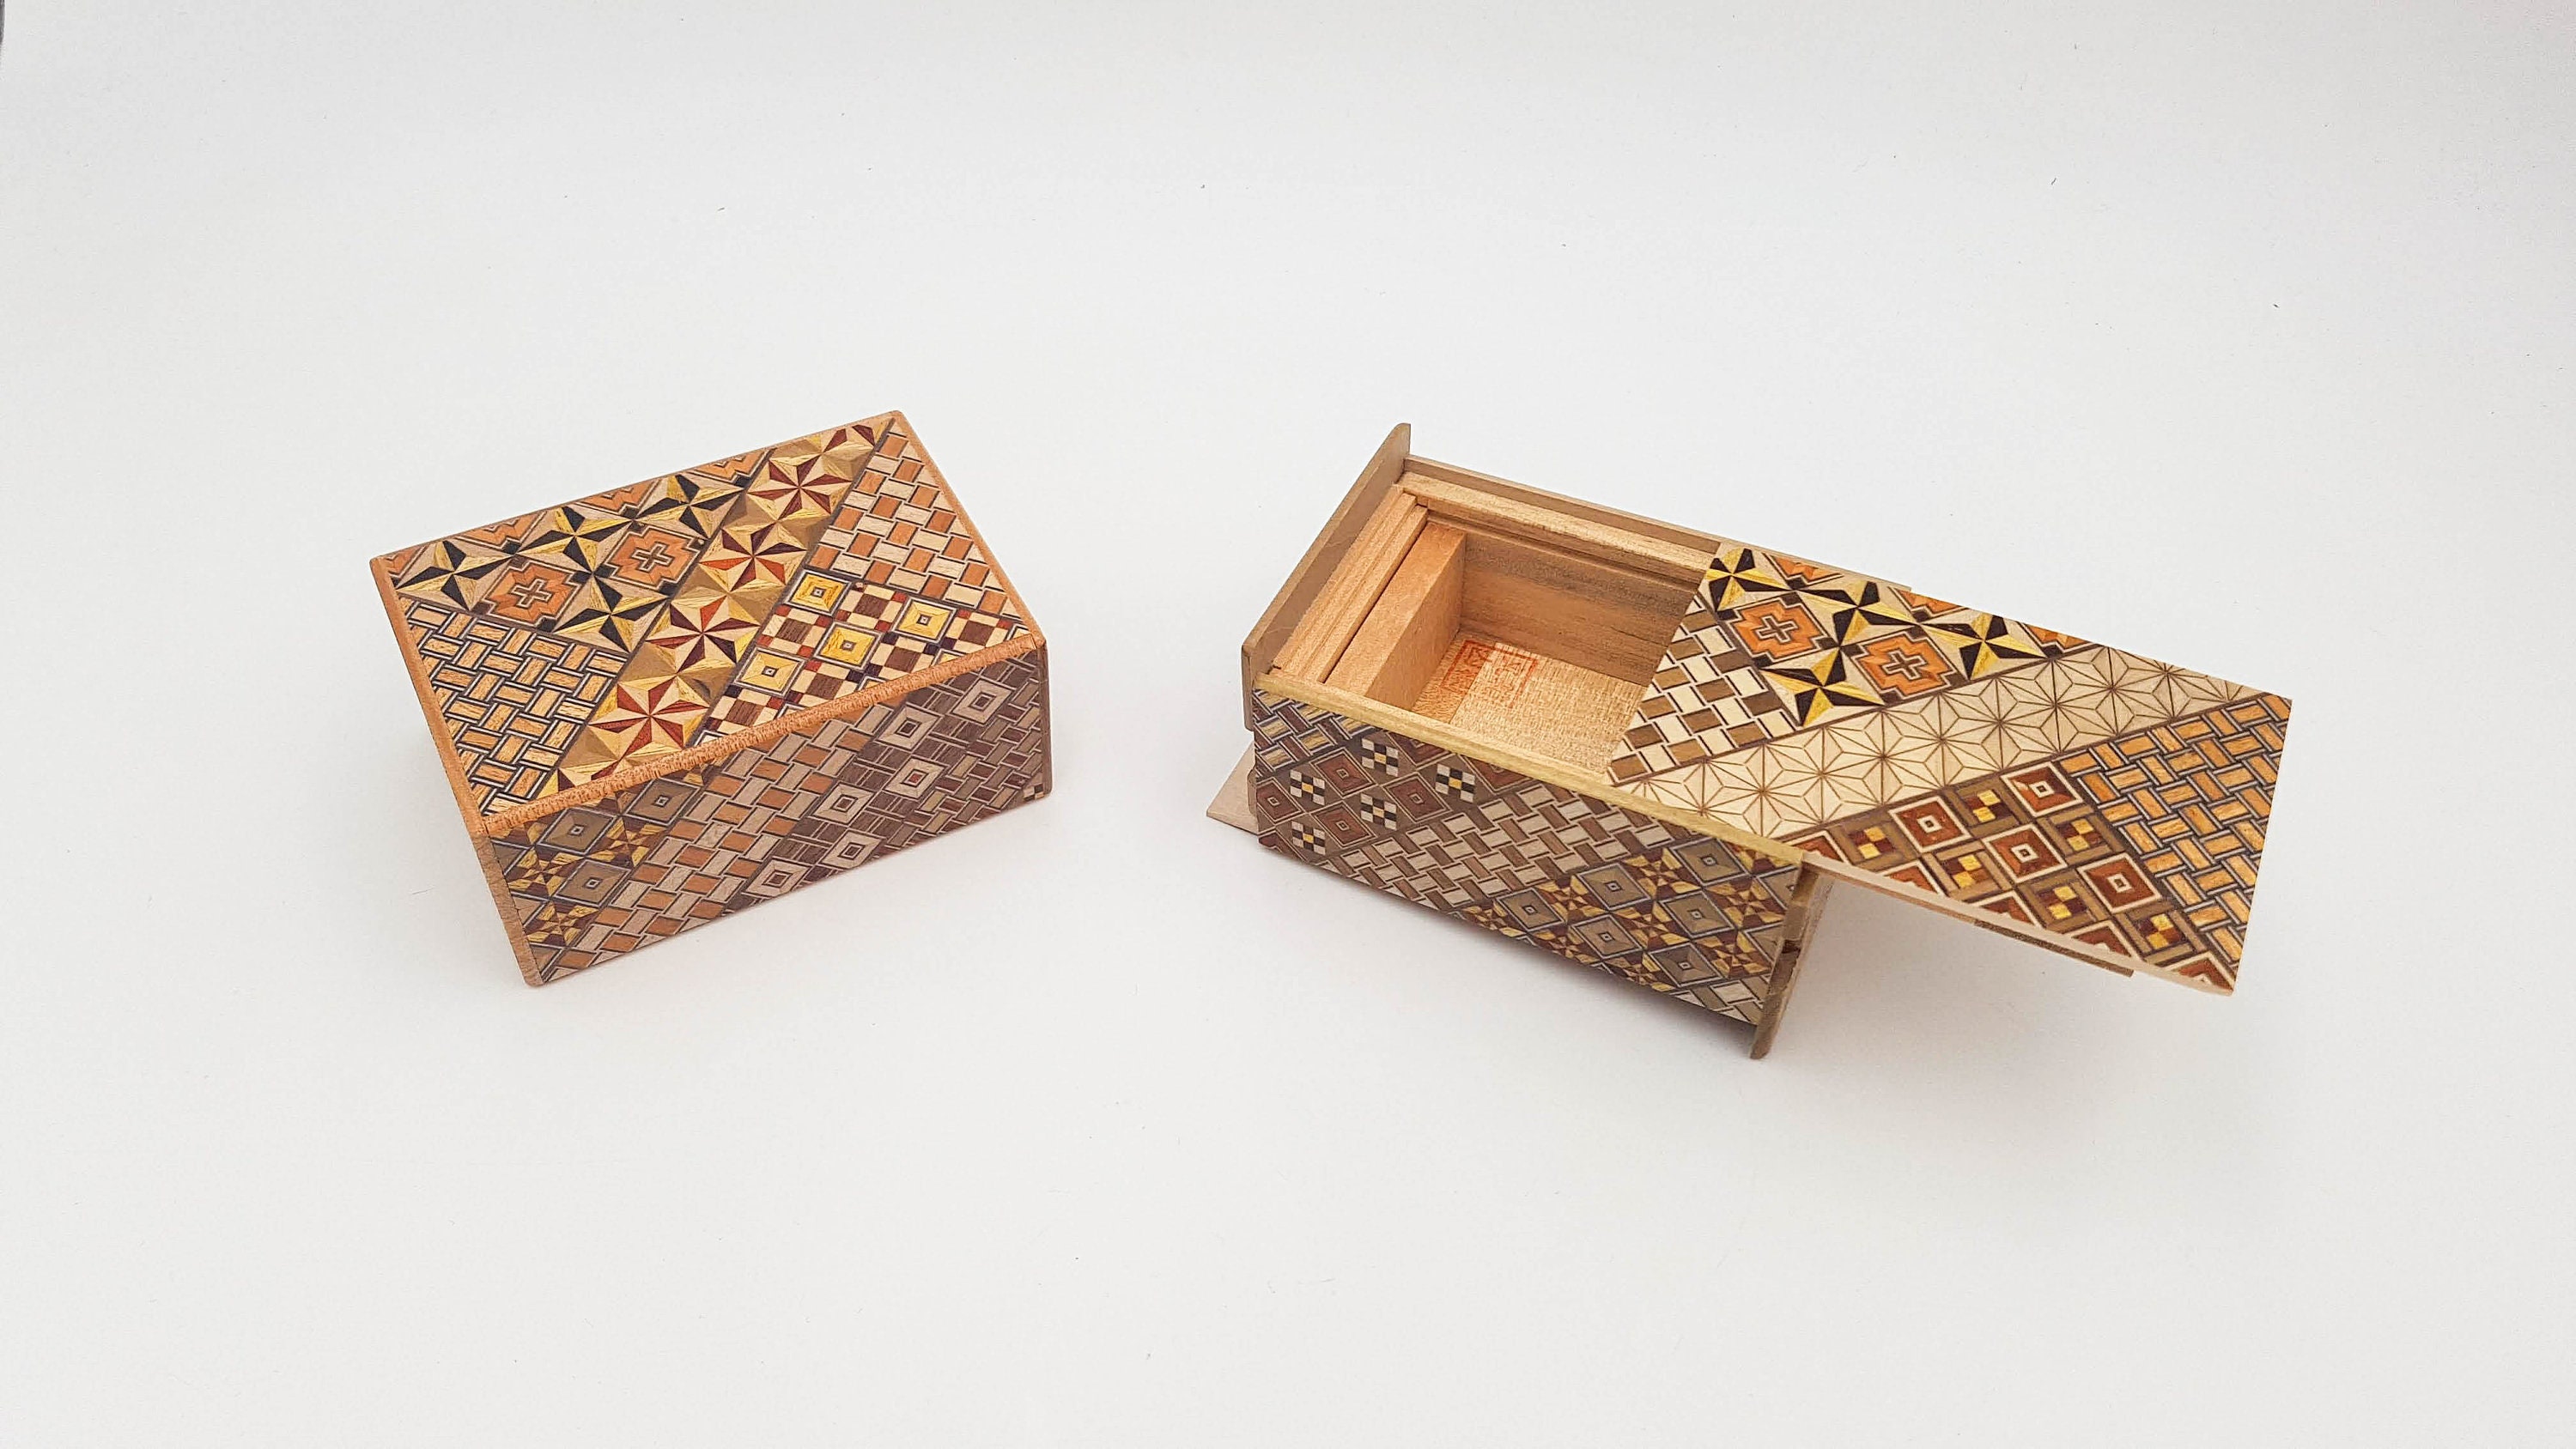 Scatola puzzle giapponese in intarsio di legno, scatola segreta che si apre  in 12 passaggi, puzzle artigianale fatto a mano in Giappone -  Italia